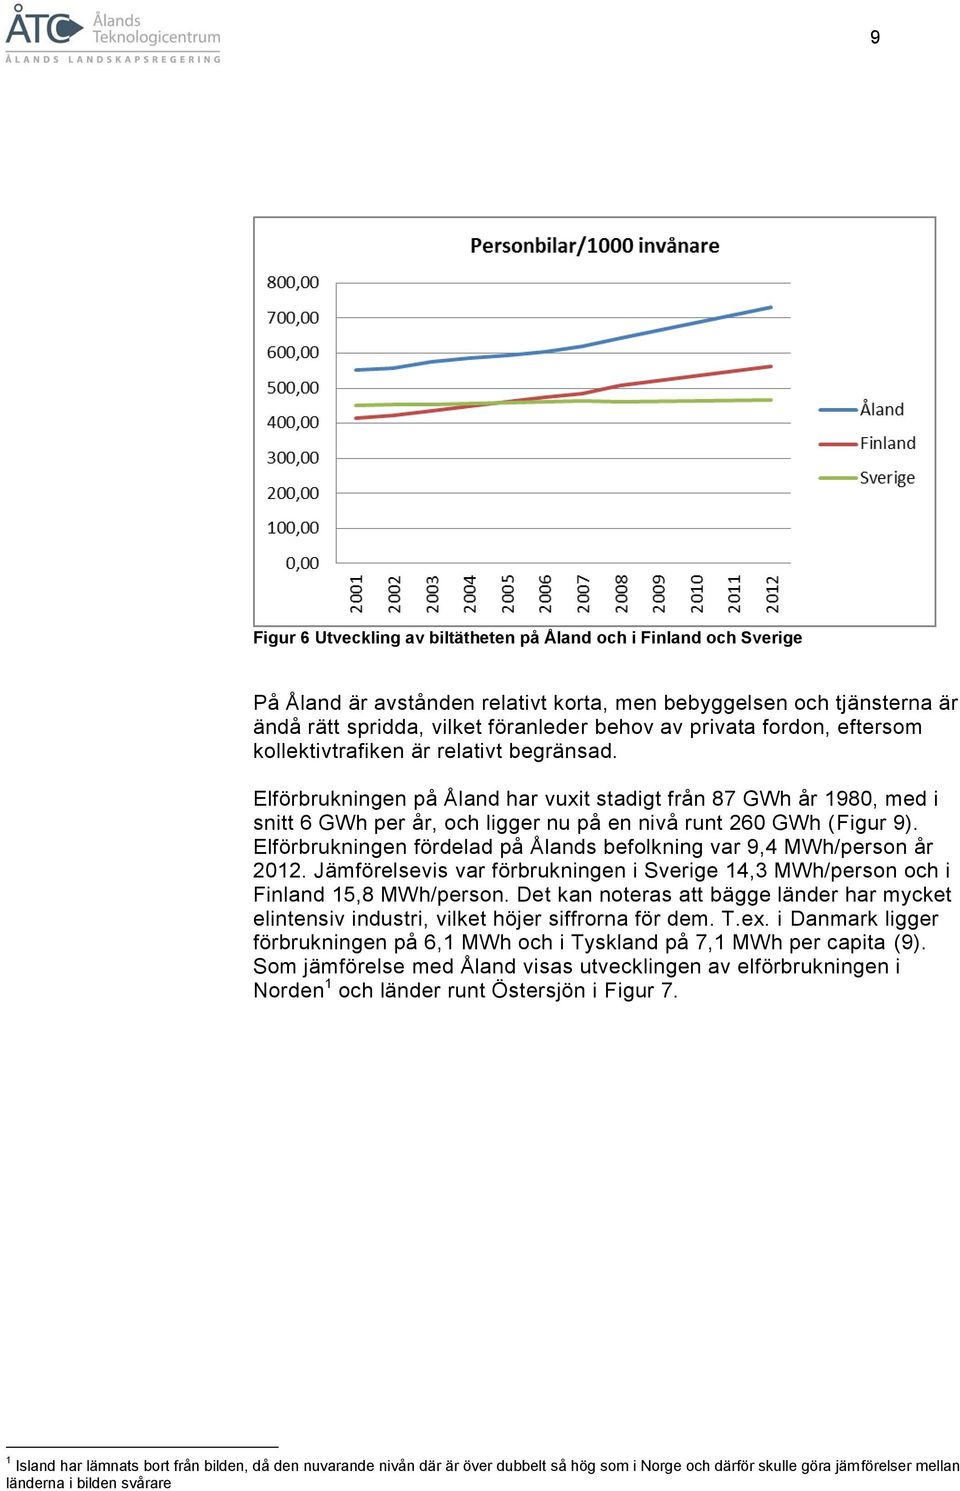 Elförbrukningen fördelad på Ålands befolkning var 9,4 MWh/person år 2012. Jämförelsevis var förbrukningen i Sverige 14,3 MWh/person och i Finland 15,8 MWh/person.